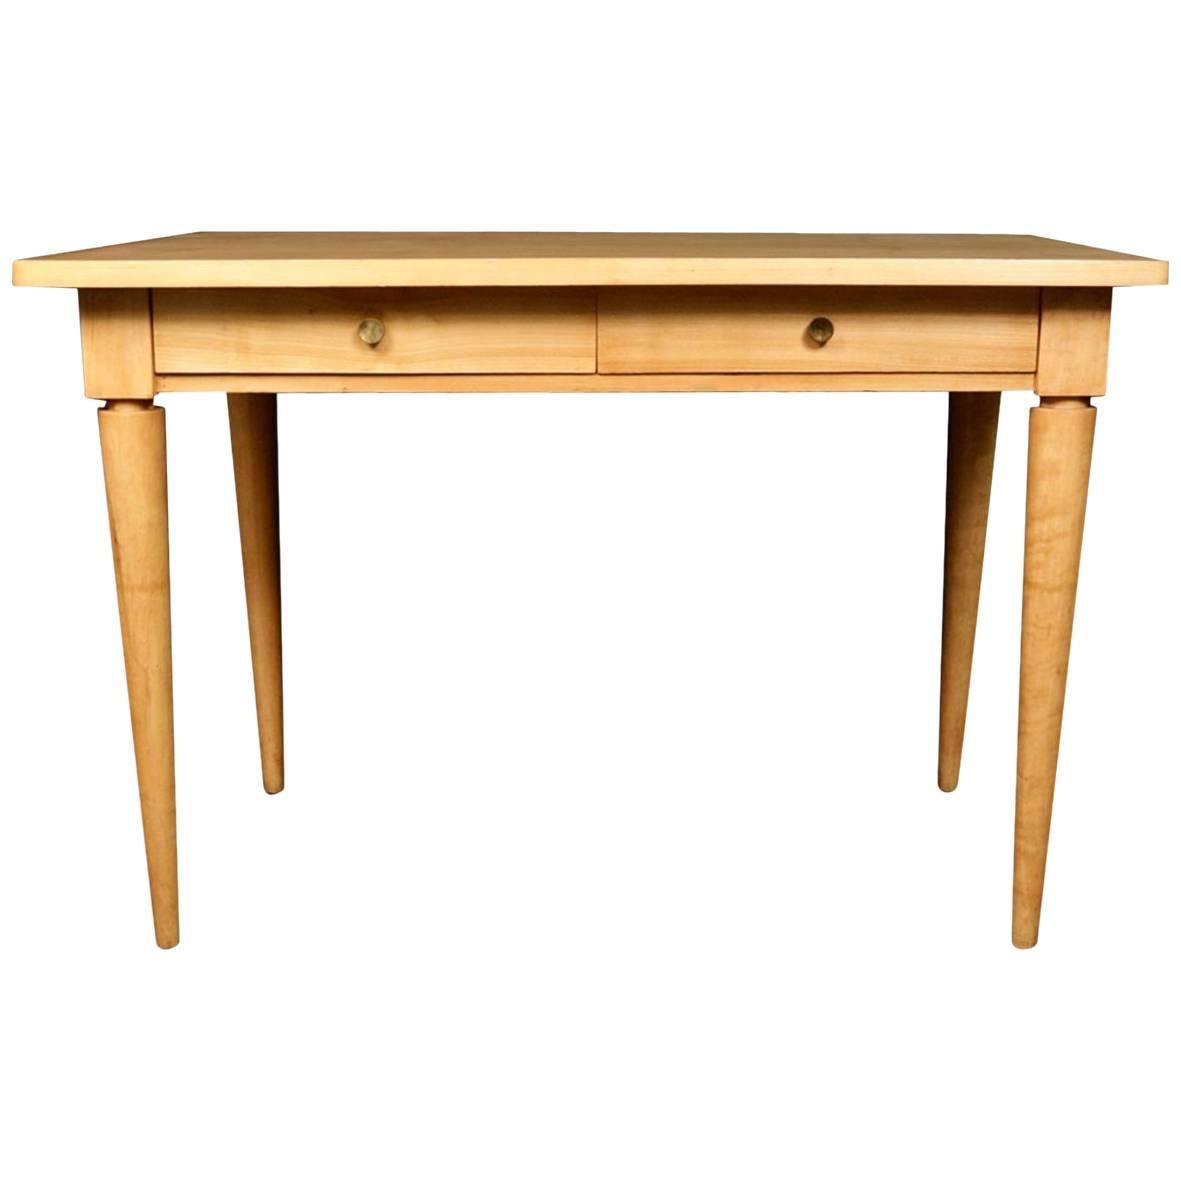 1940s Table Desks Designed by André Arbus for 'La Cité Universitaire'